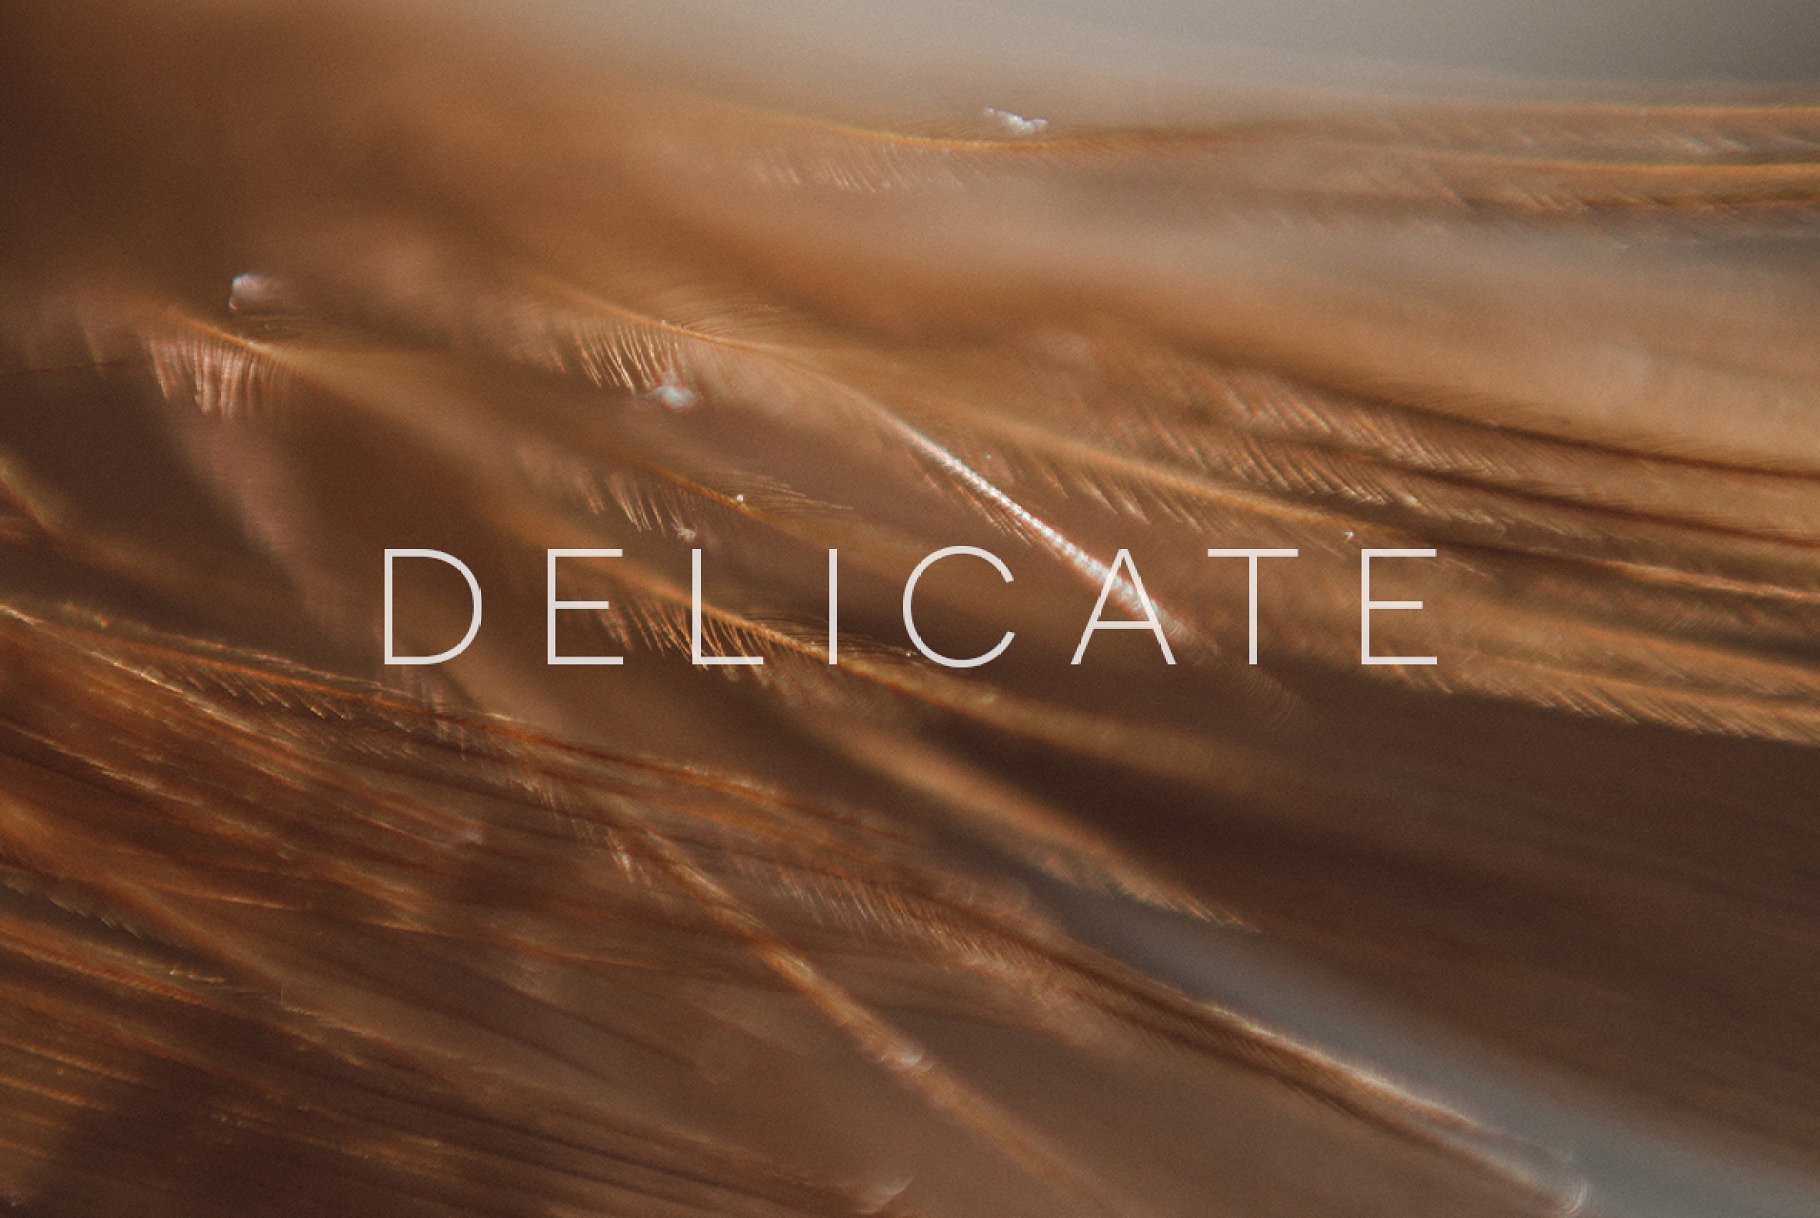 Delicate